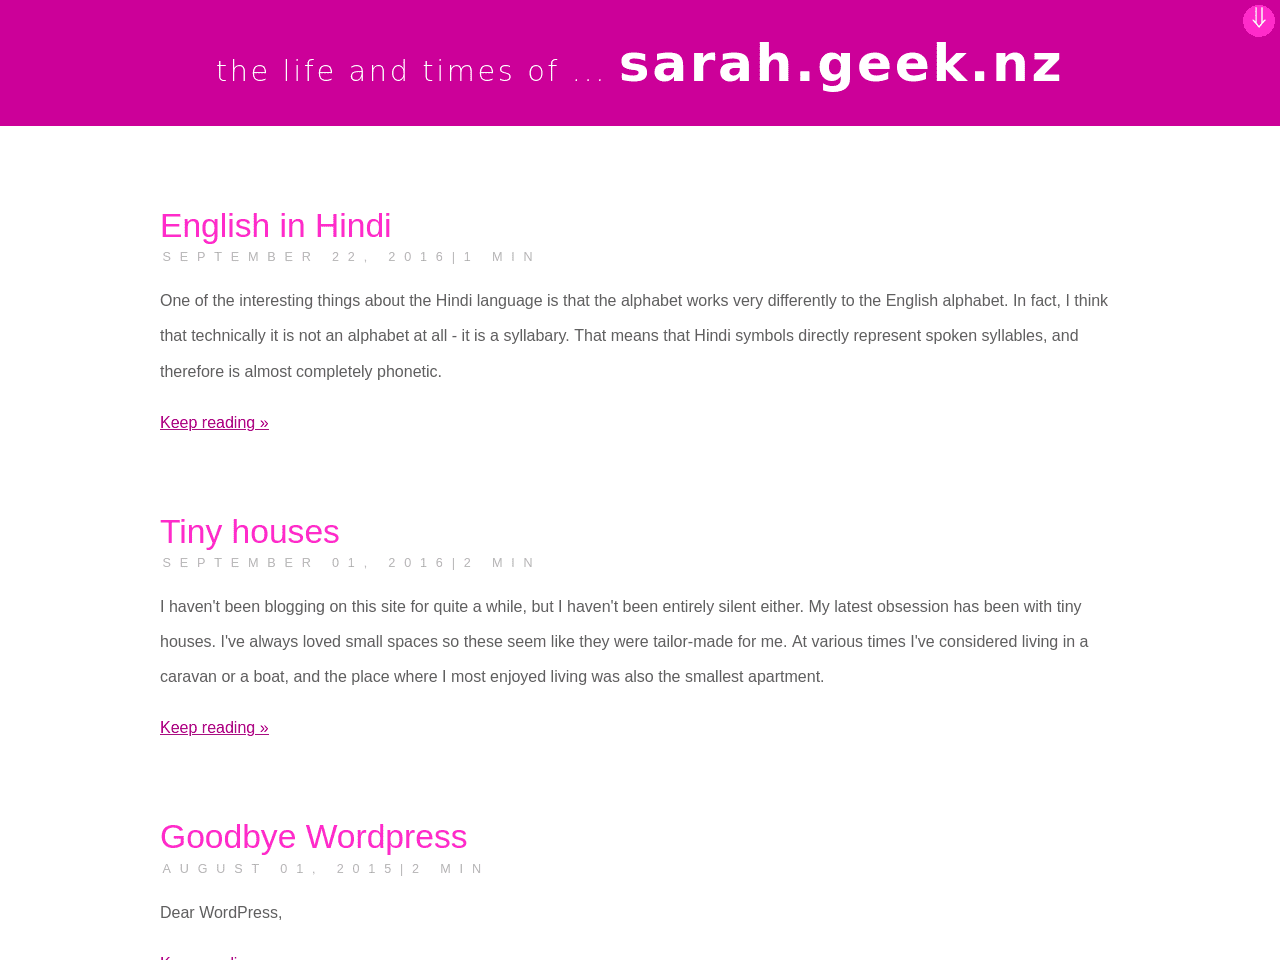 Sarah Geek NZ